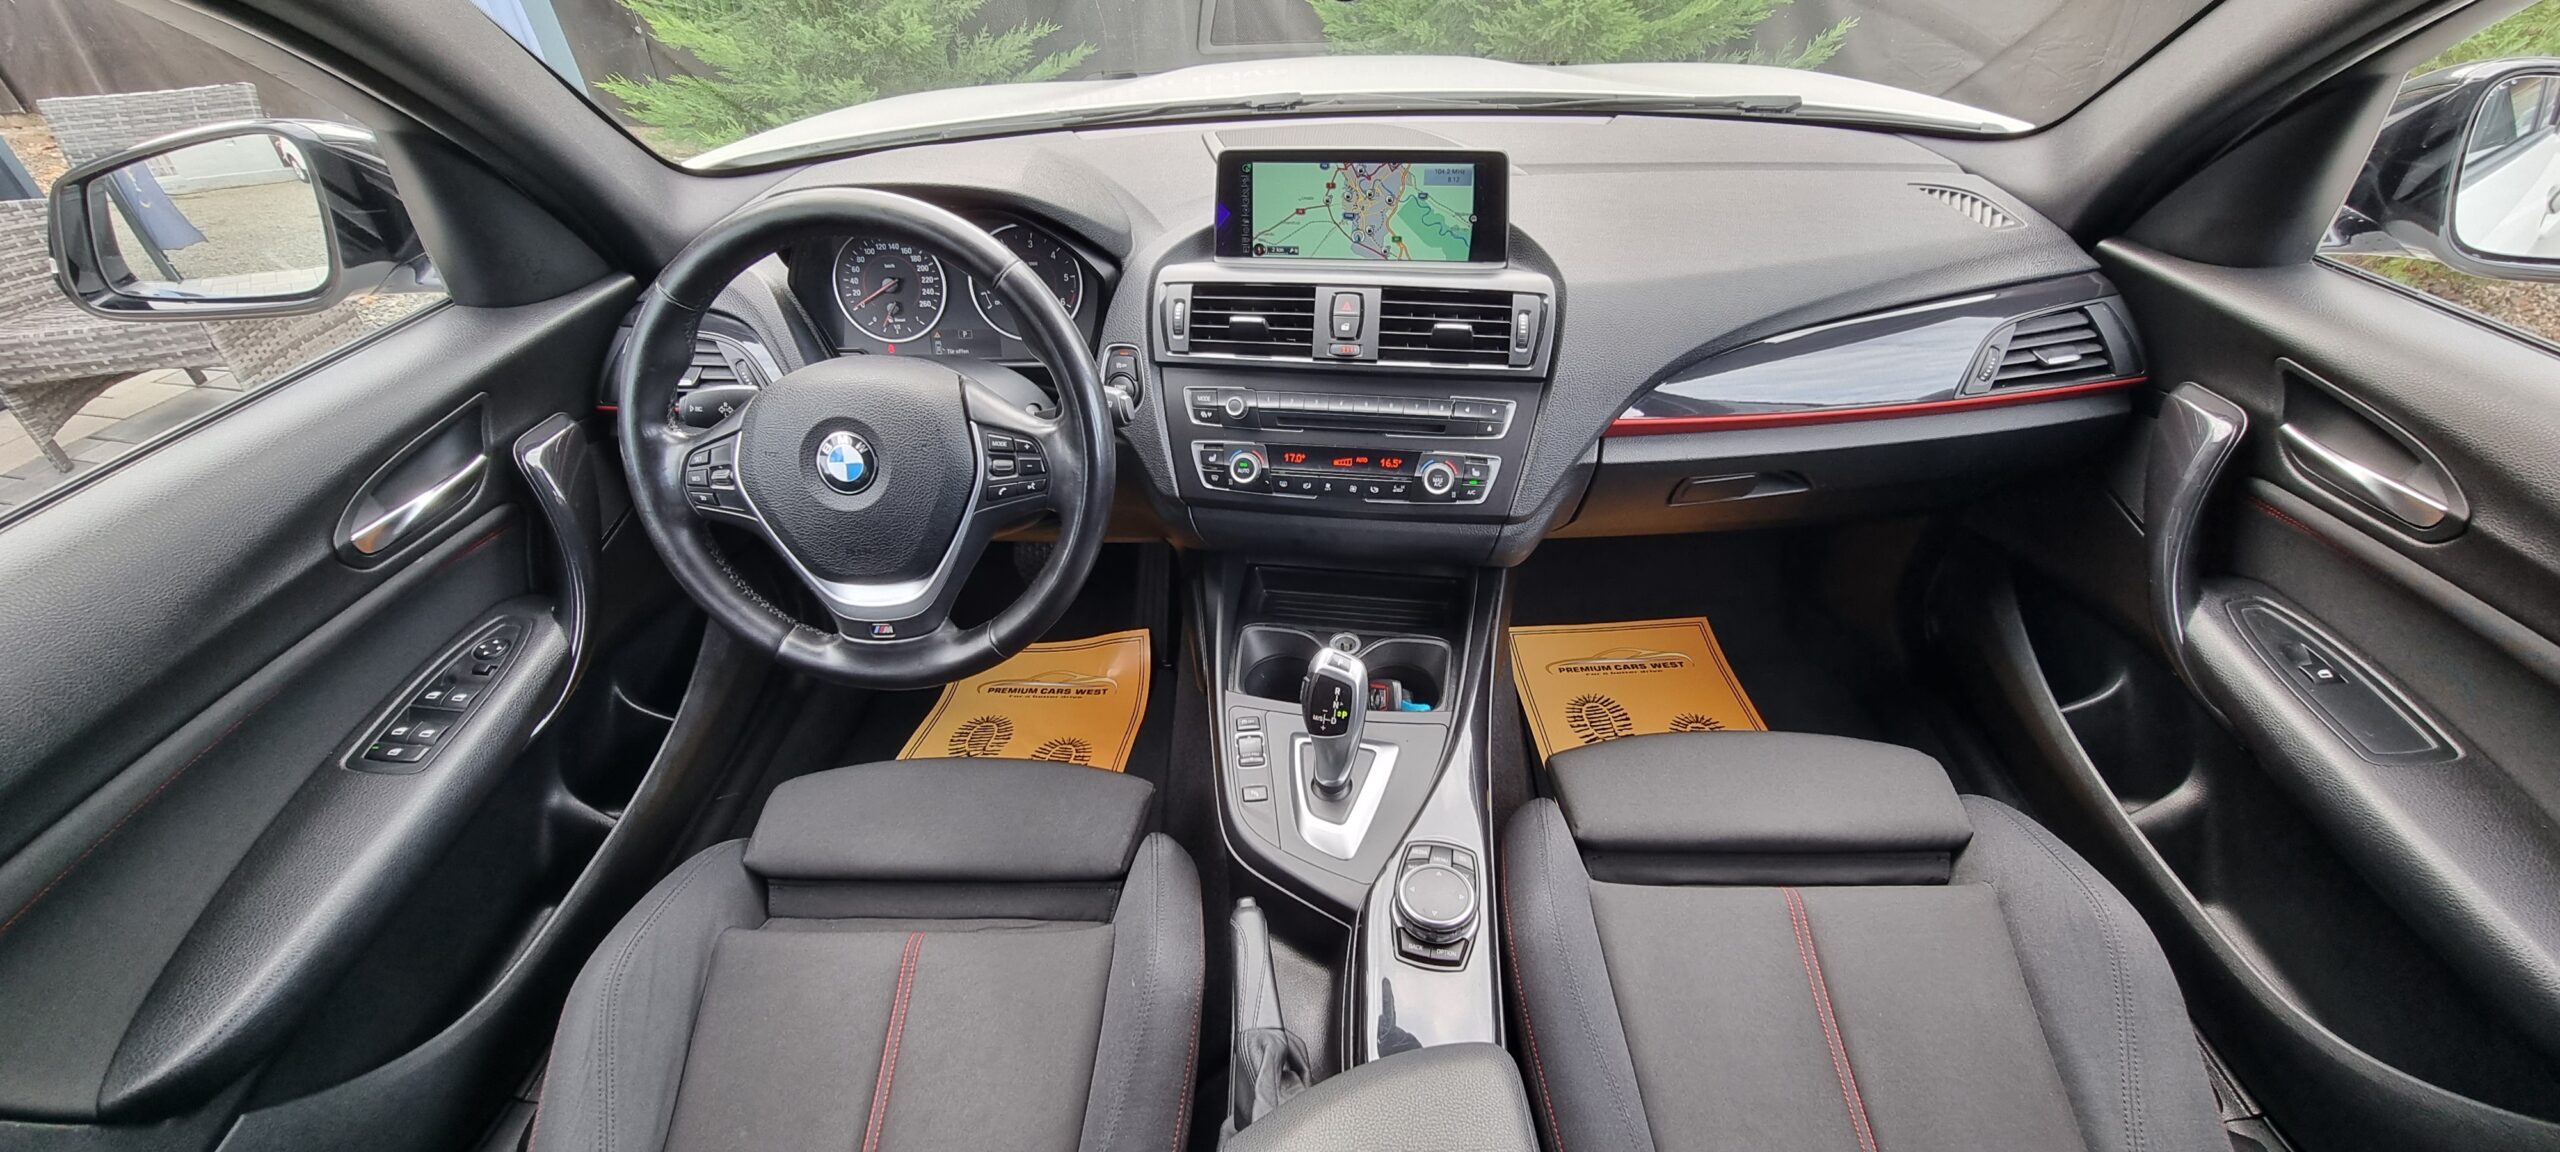 BMW SERIA 1 M-PAKET, CUTIE AUTOMATA, 2.0 DIESEL, 143 CP, EURO 5, AN 2012